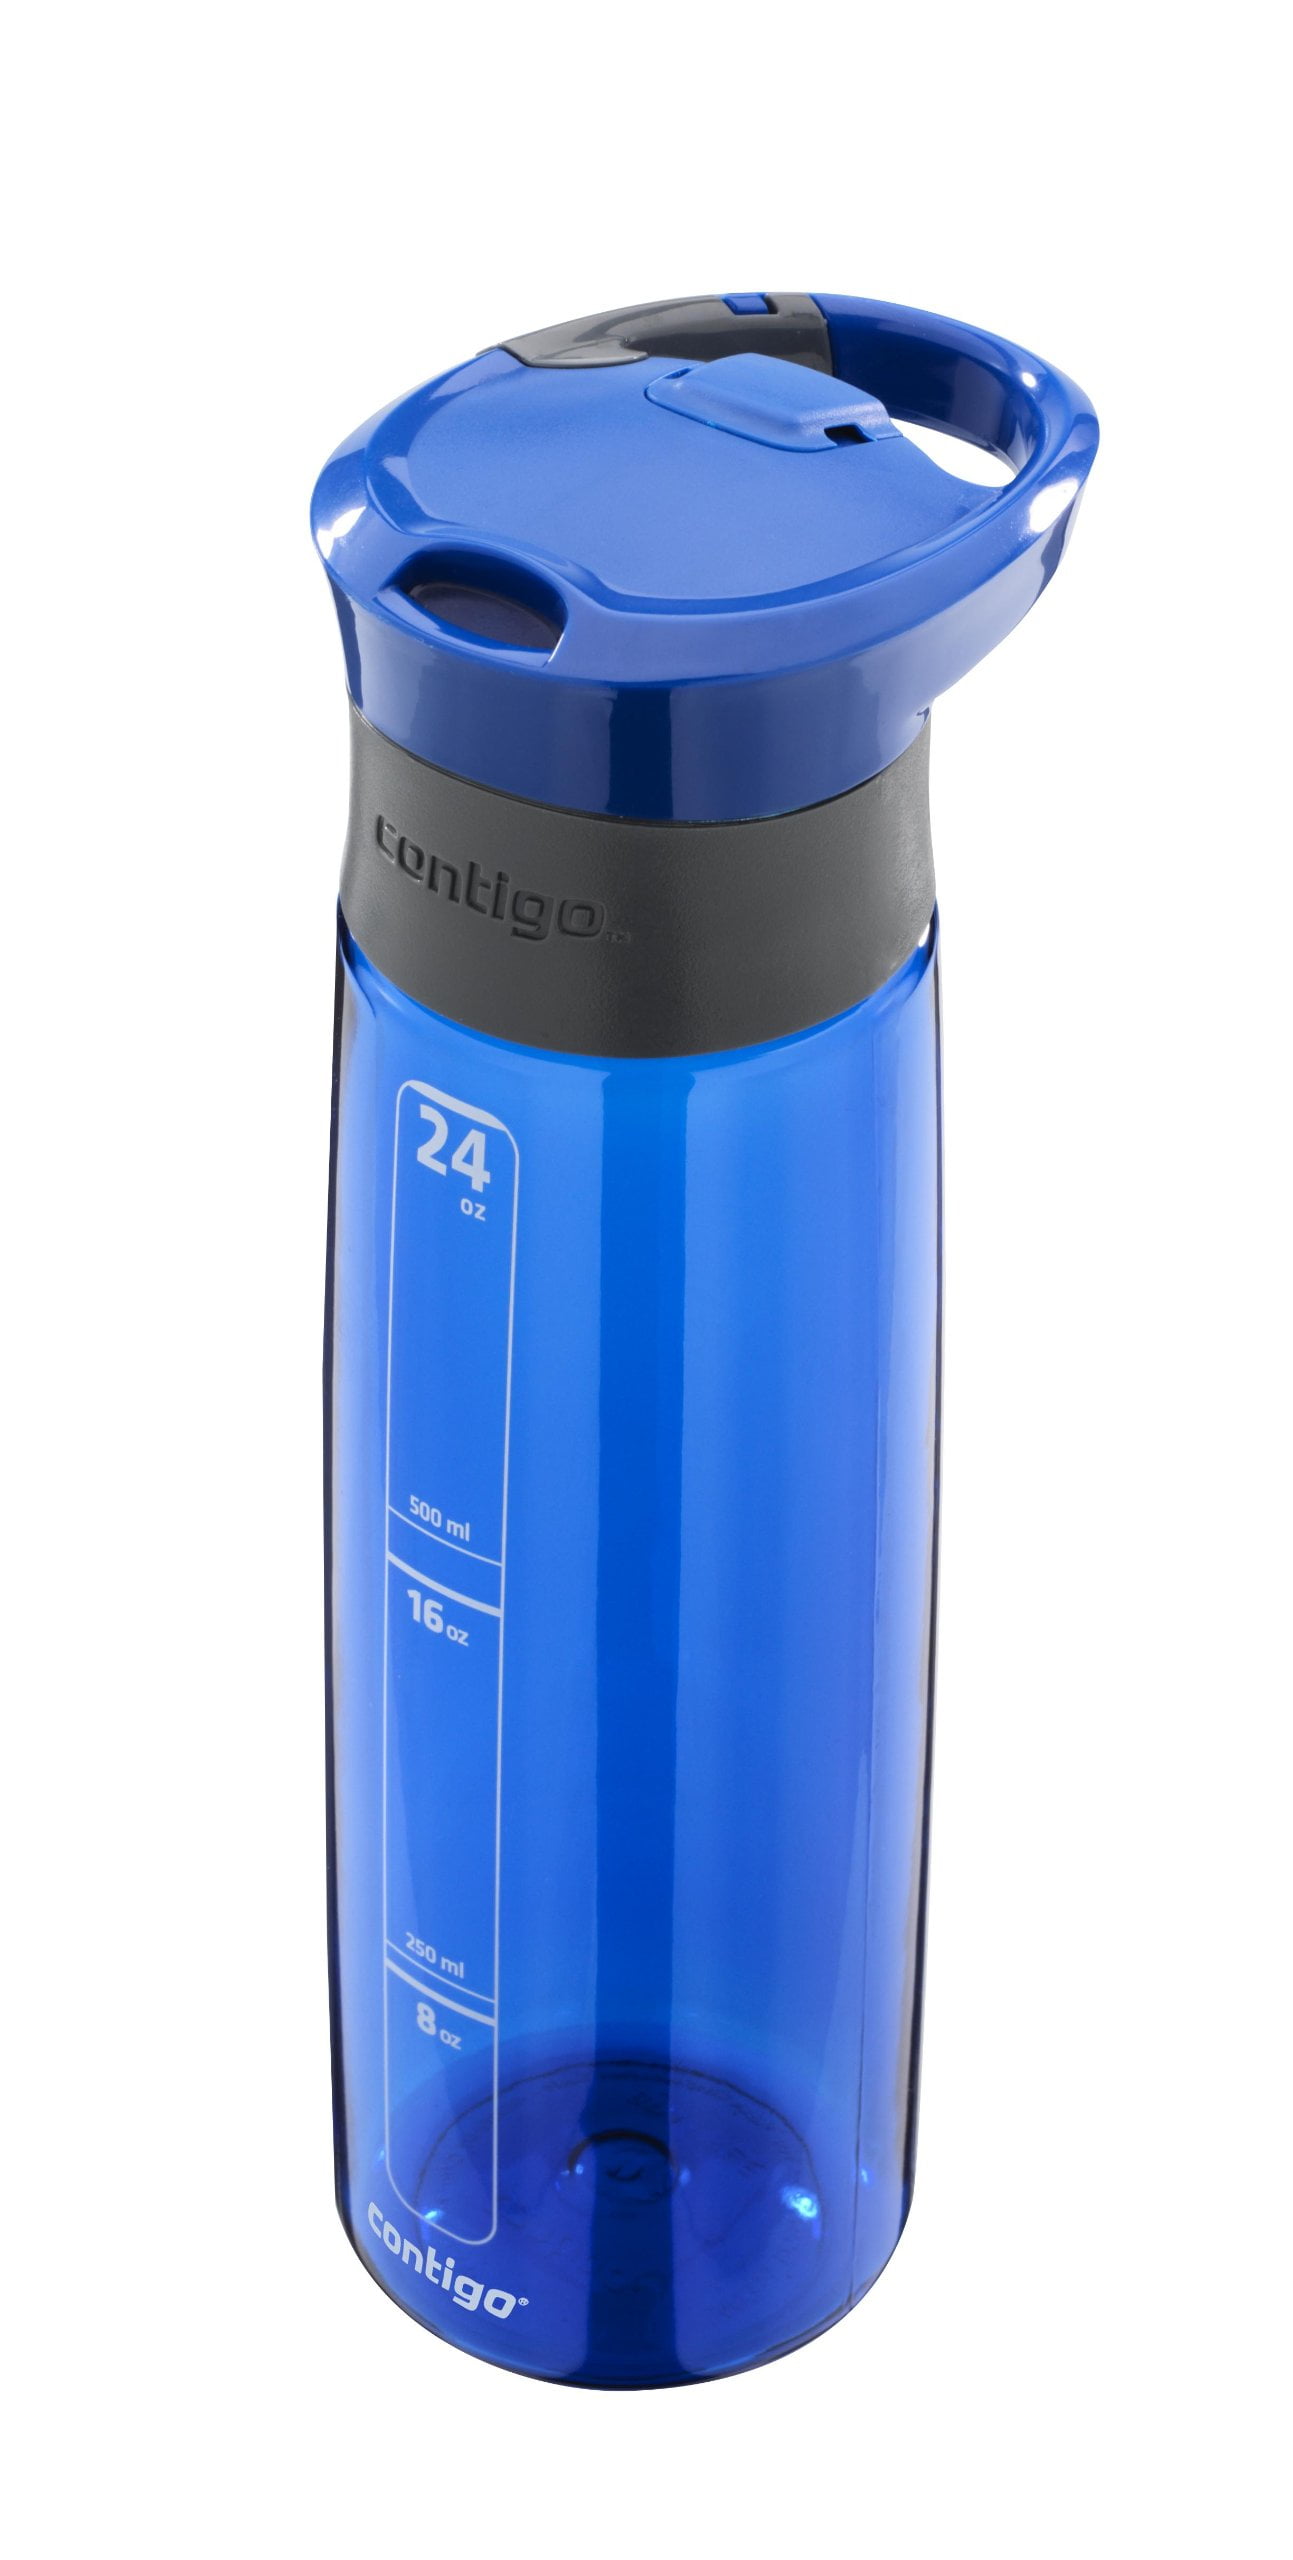 Contigo Wbb100a06 Autoseal Plastic Water Bottle, 24 Oz, Blue